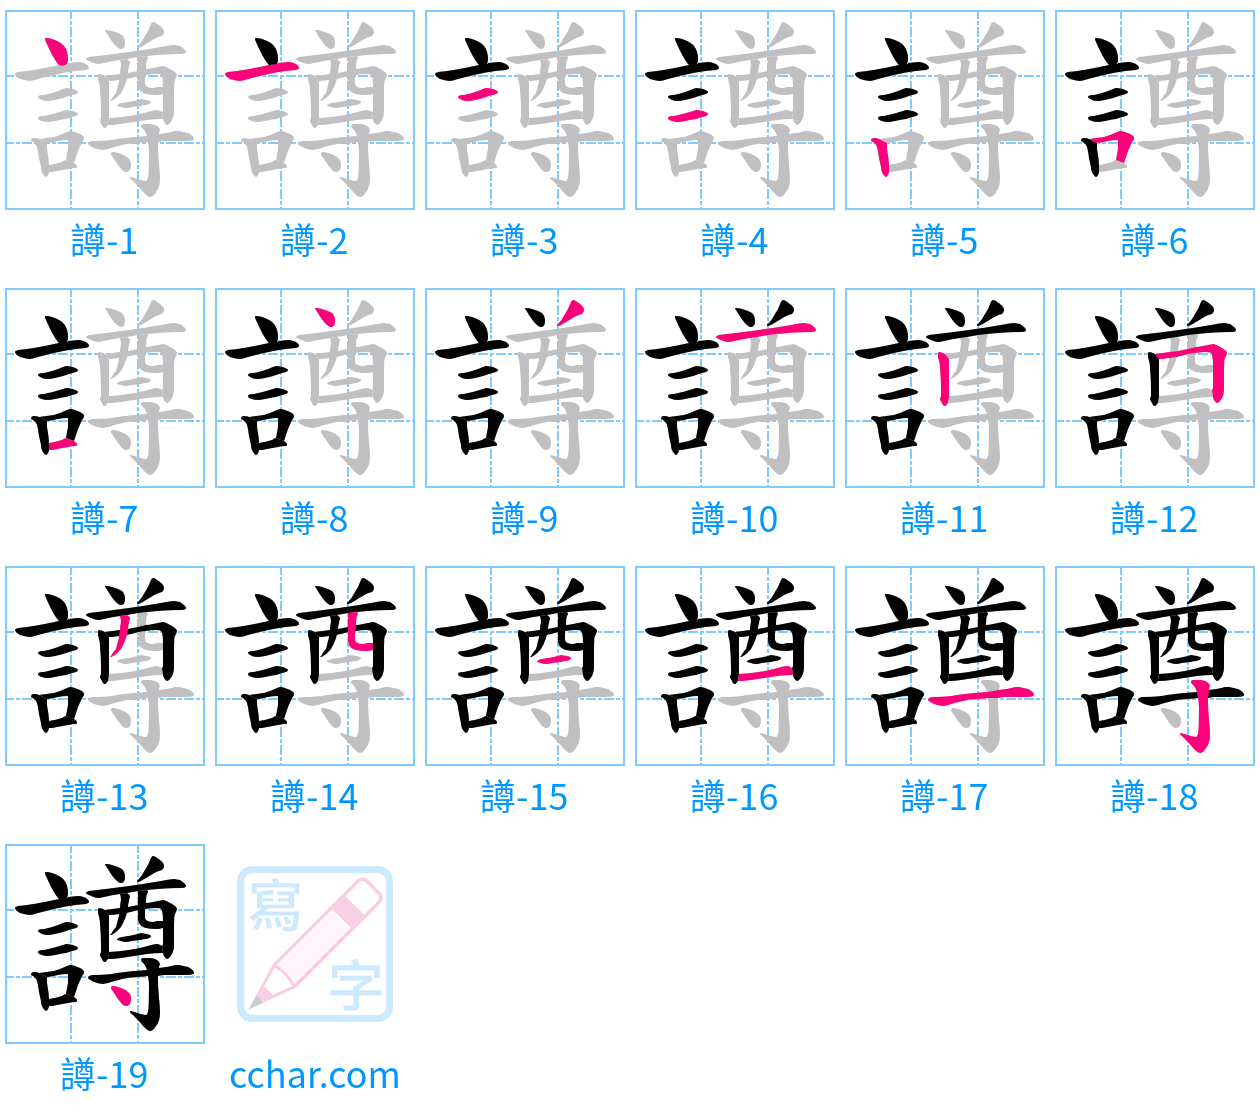 譐 stroke order step-by-step diagram